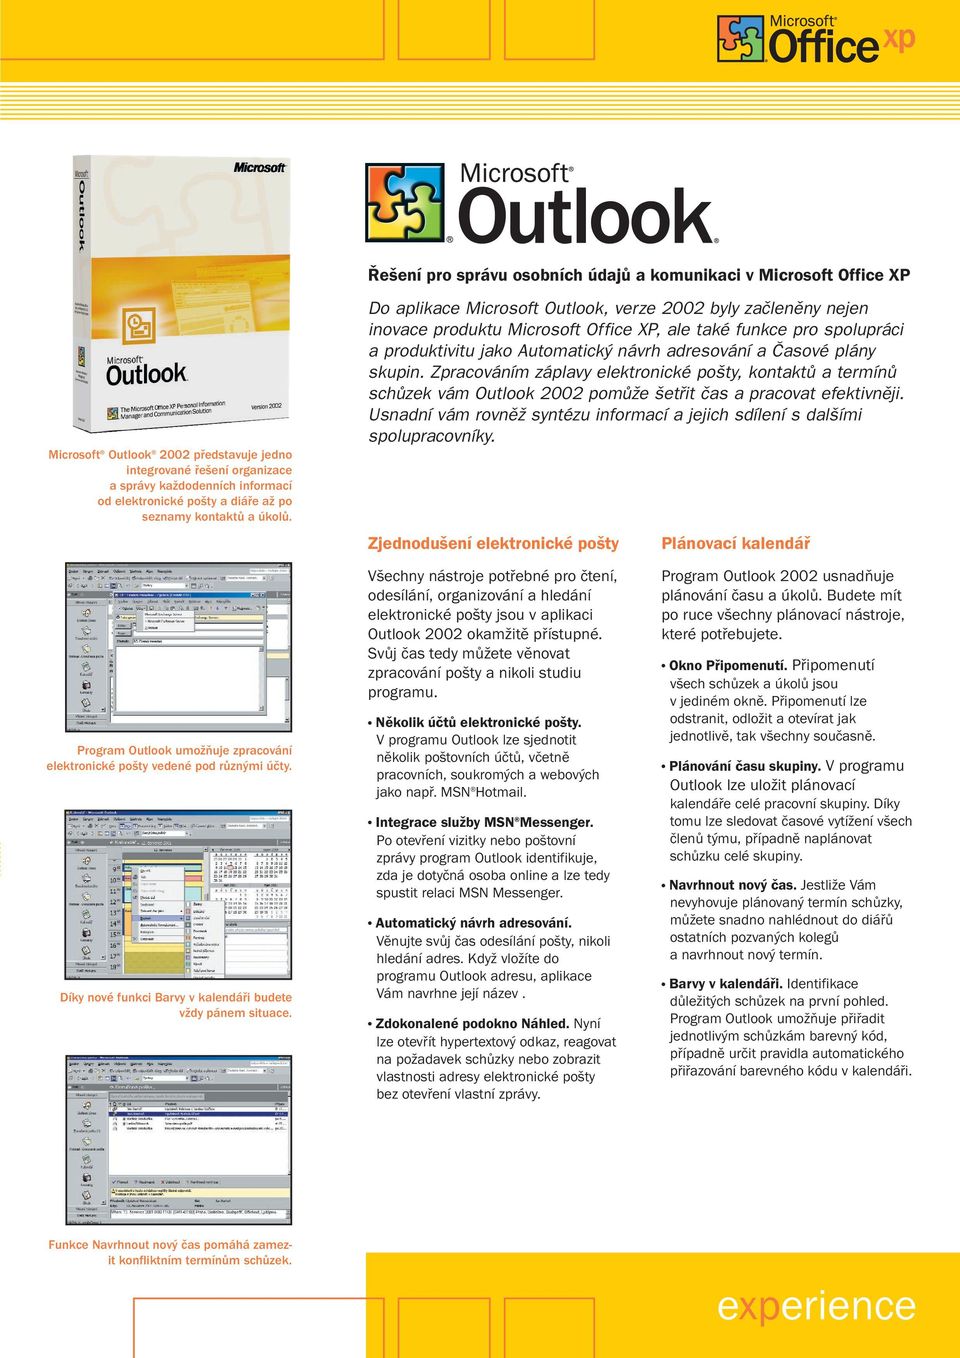 Do aplikace Microsoft Outlook, verze 2002 byly zaãlenûny nejen inovace produktu Microsoft Office XP, ale také funkce pro spolupráci a produktivitu jako Automatick návrh adresování a âasové plány